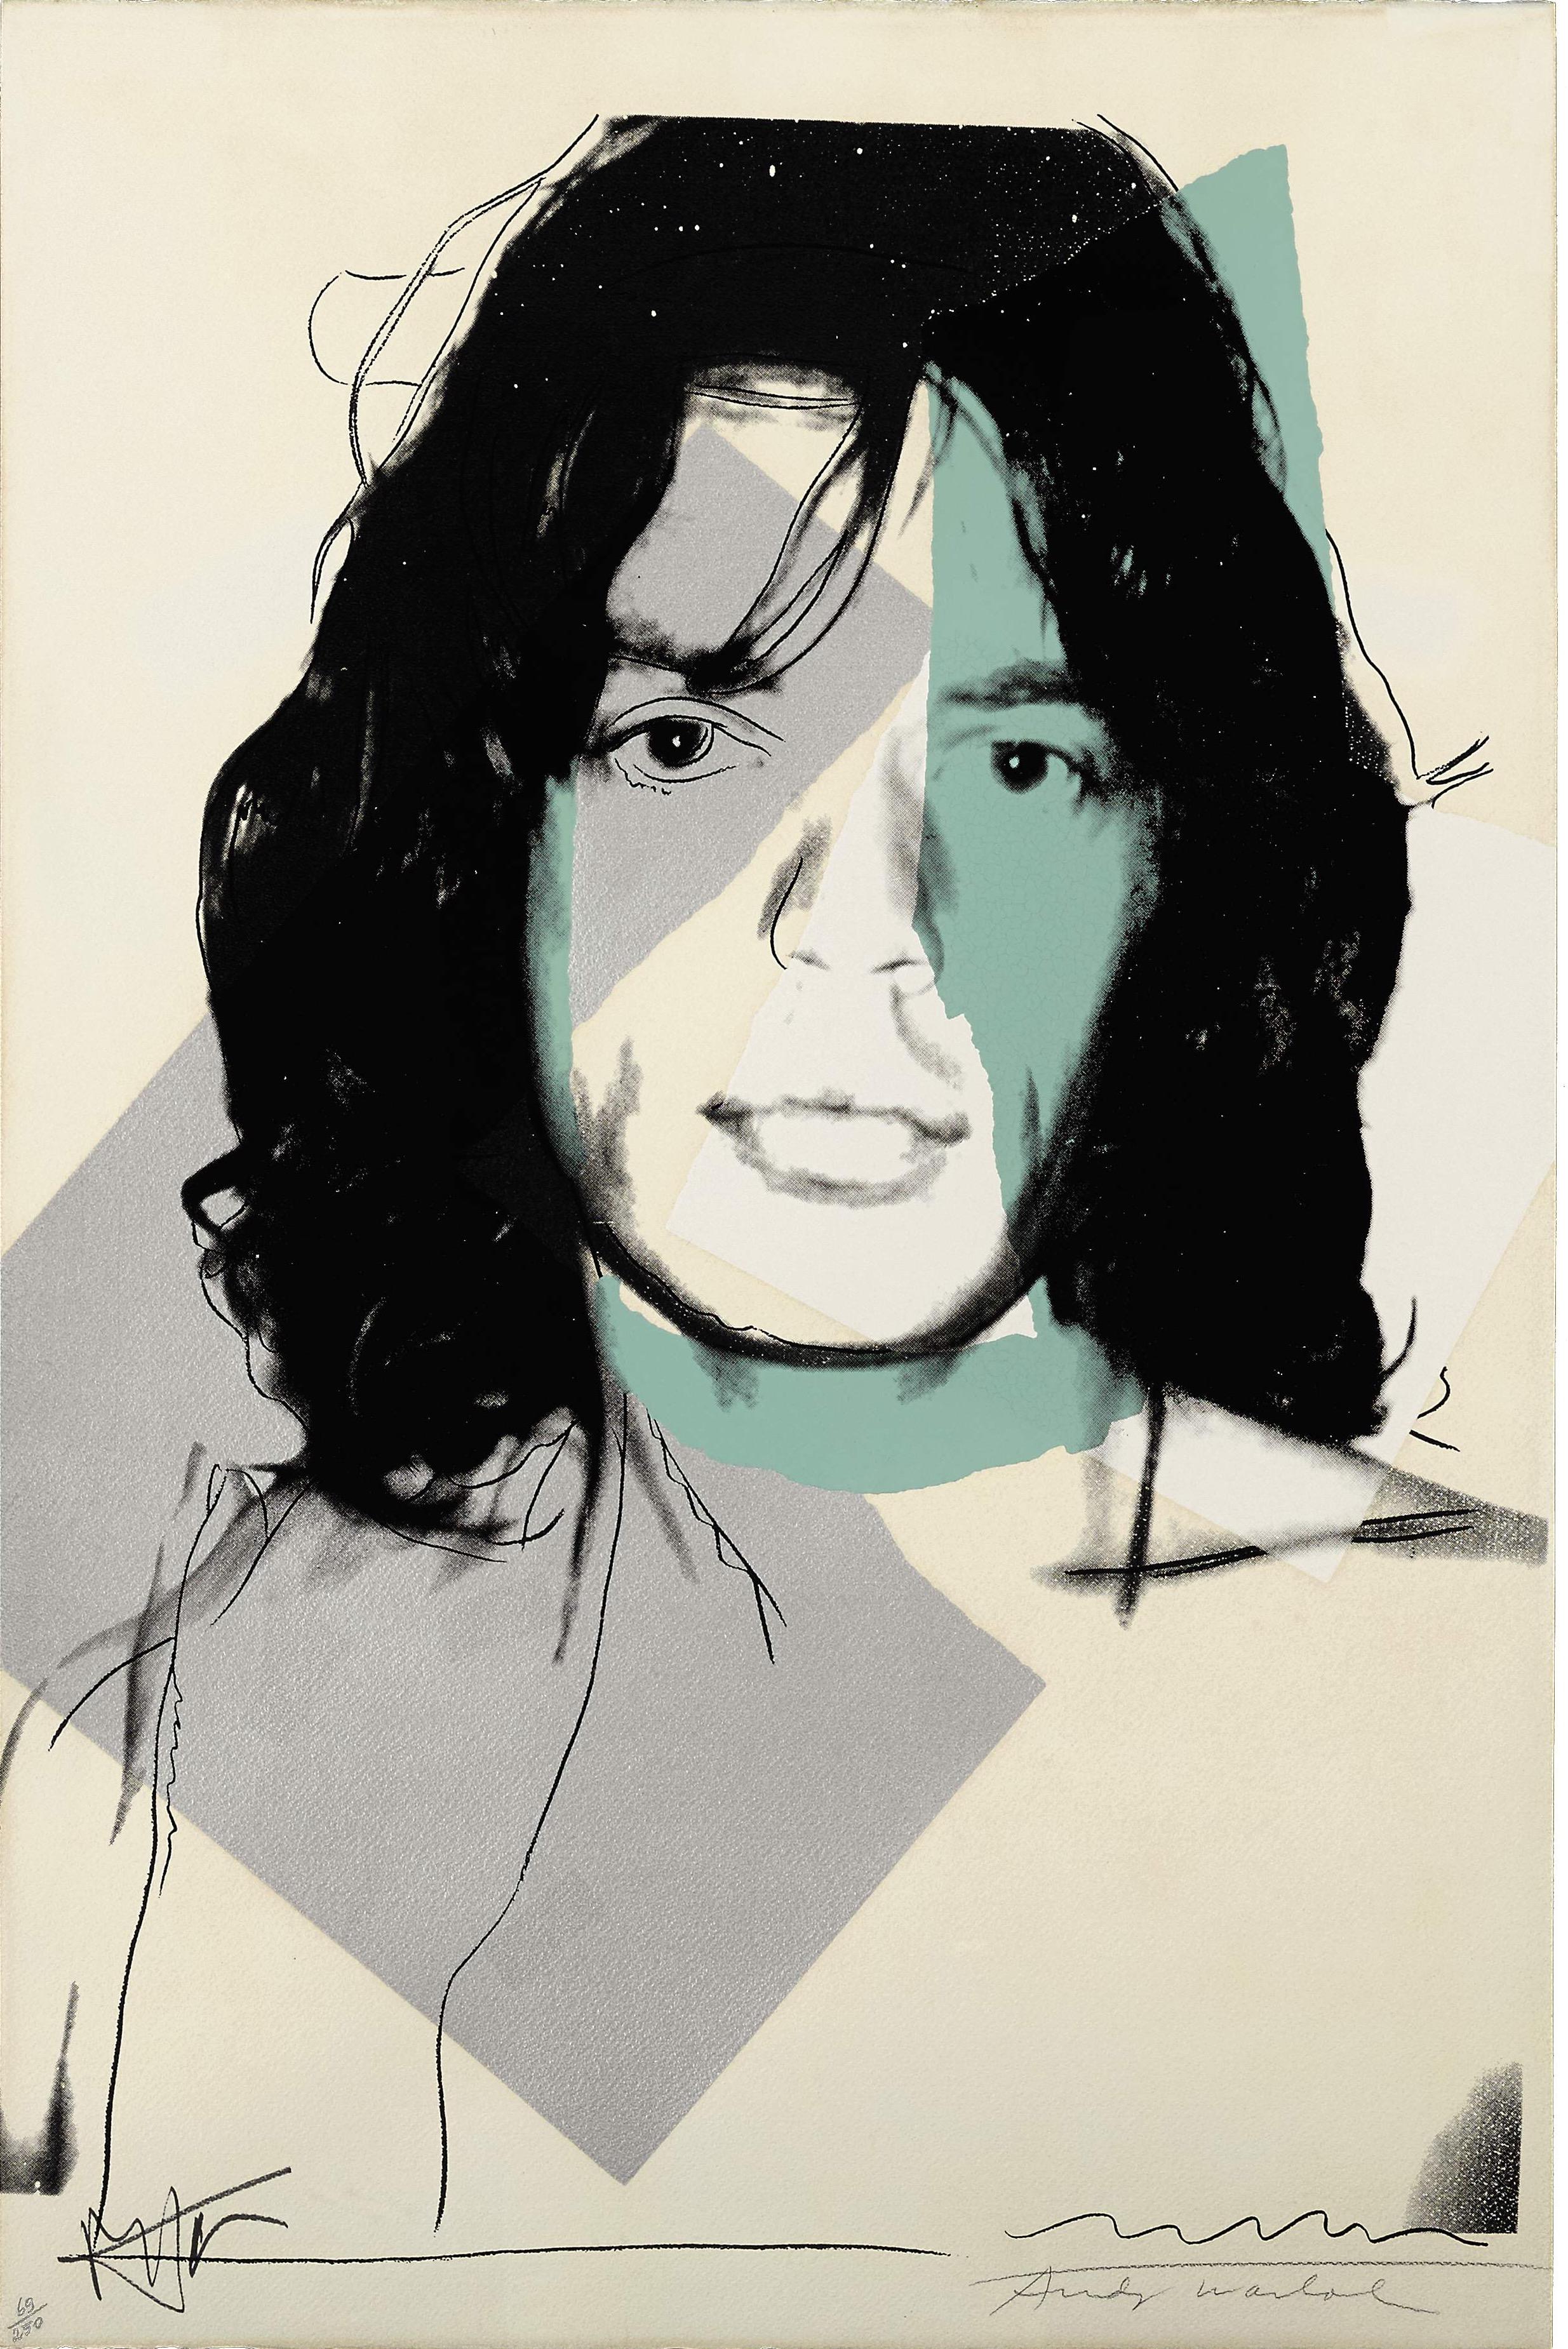 Andy Warhol Portrait Print - Mick Jagger F&S II.138